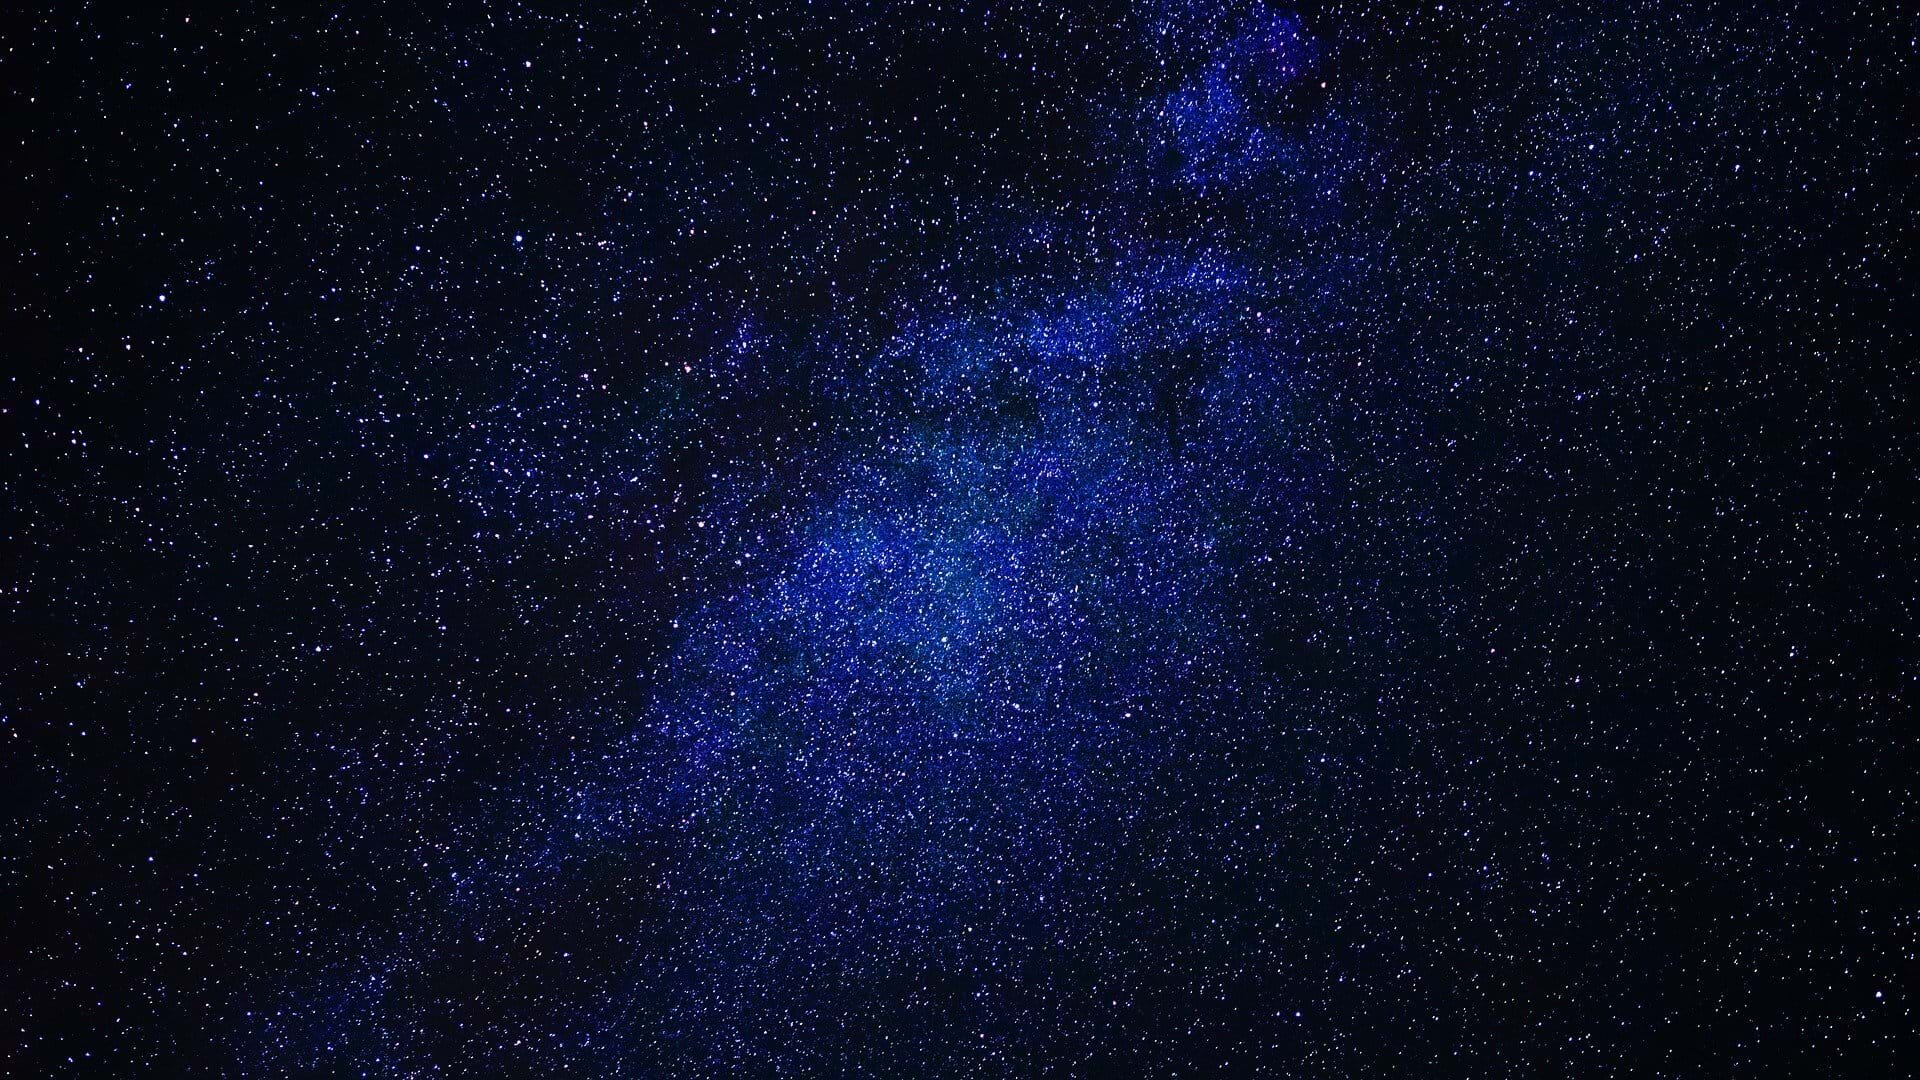 Milky Way seen in Sark